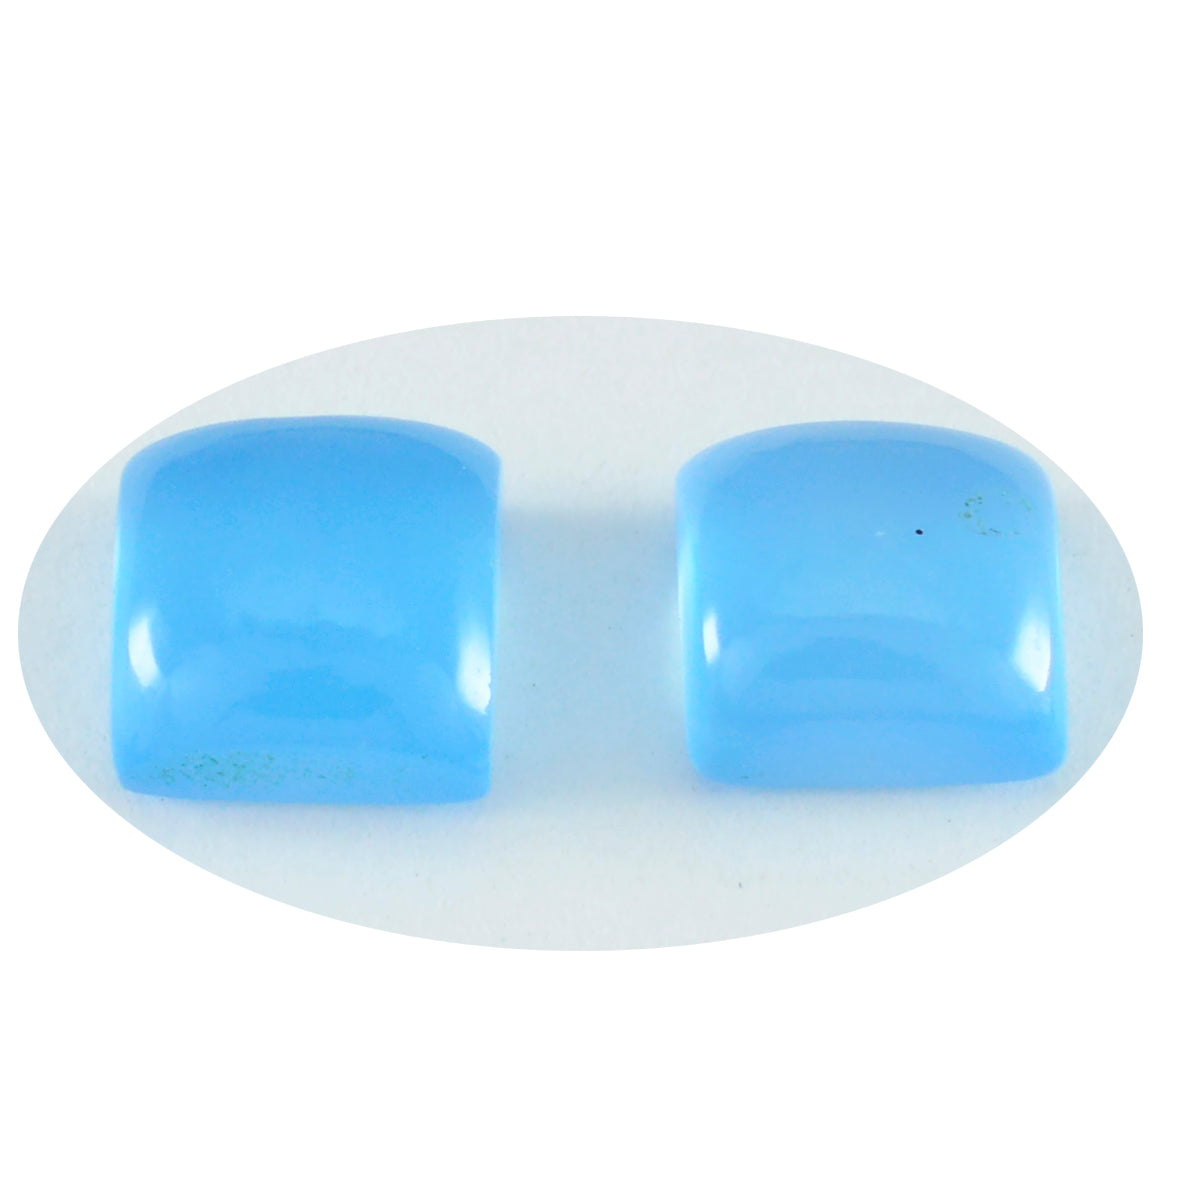 Riyogems 1 pc cabochon calcédoine bleue 10x10 mm forme carrée belle qualité gemme en vrac